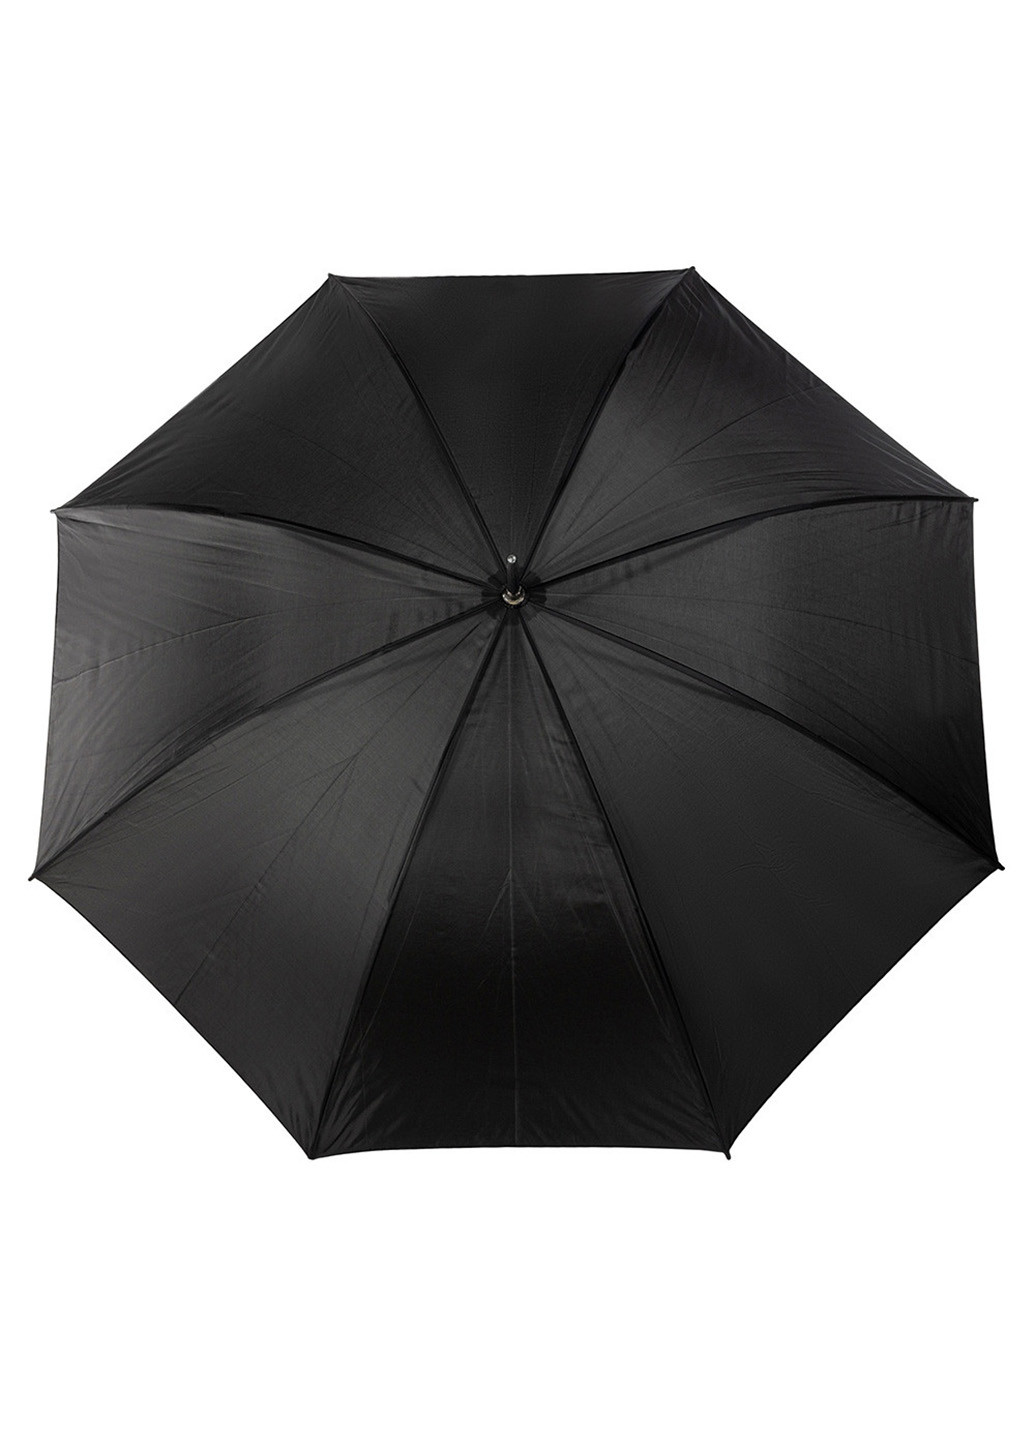 Мужской зонт-трость механический 117 см Incognito (216146671)